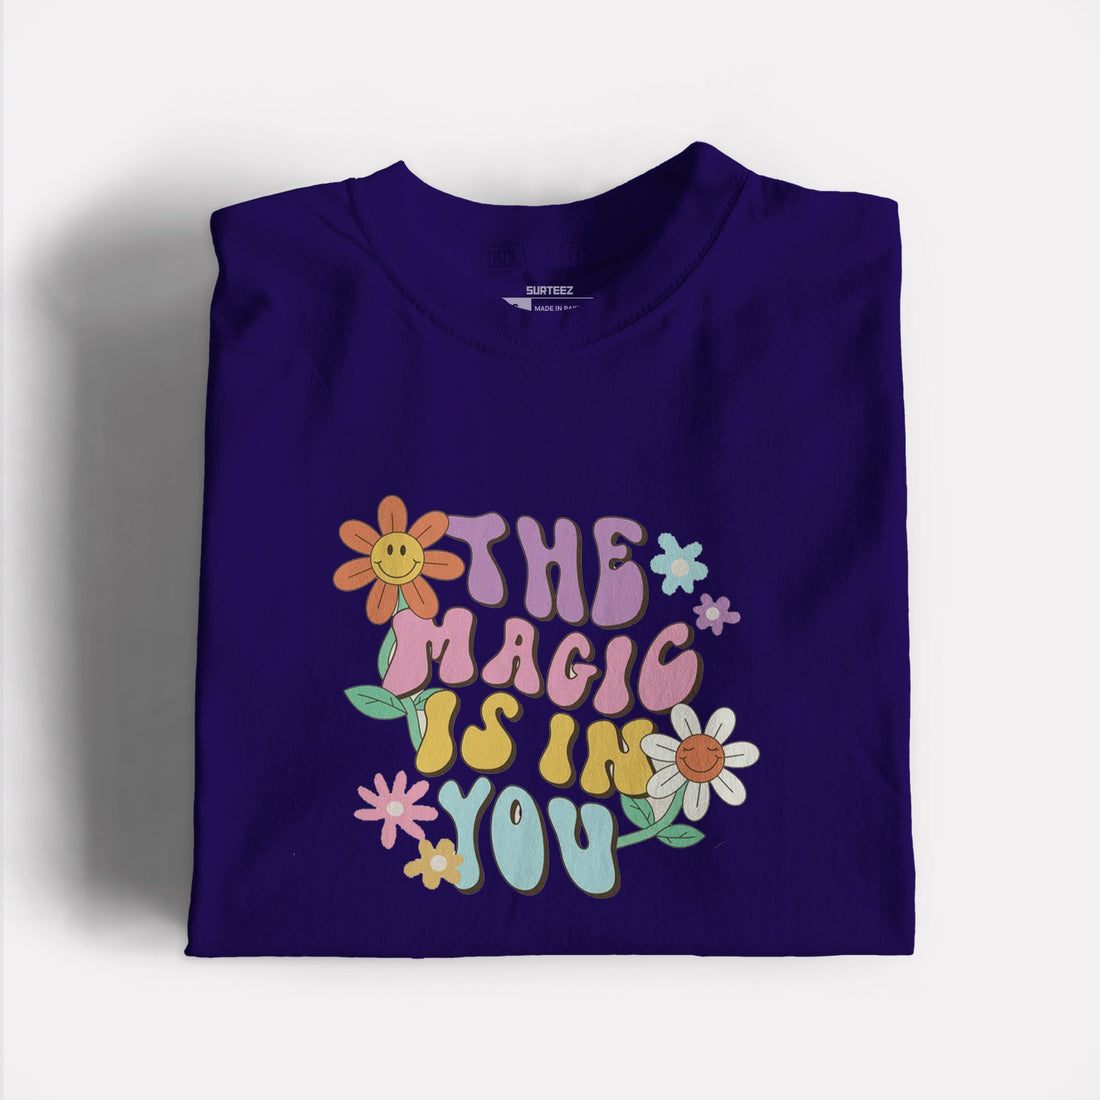 Magic vibe Graphic Tshirt